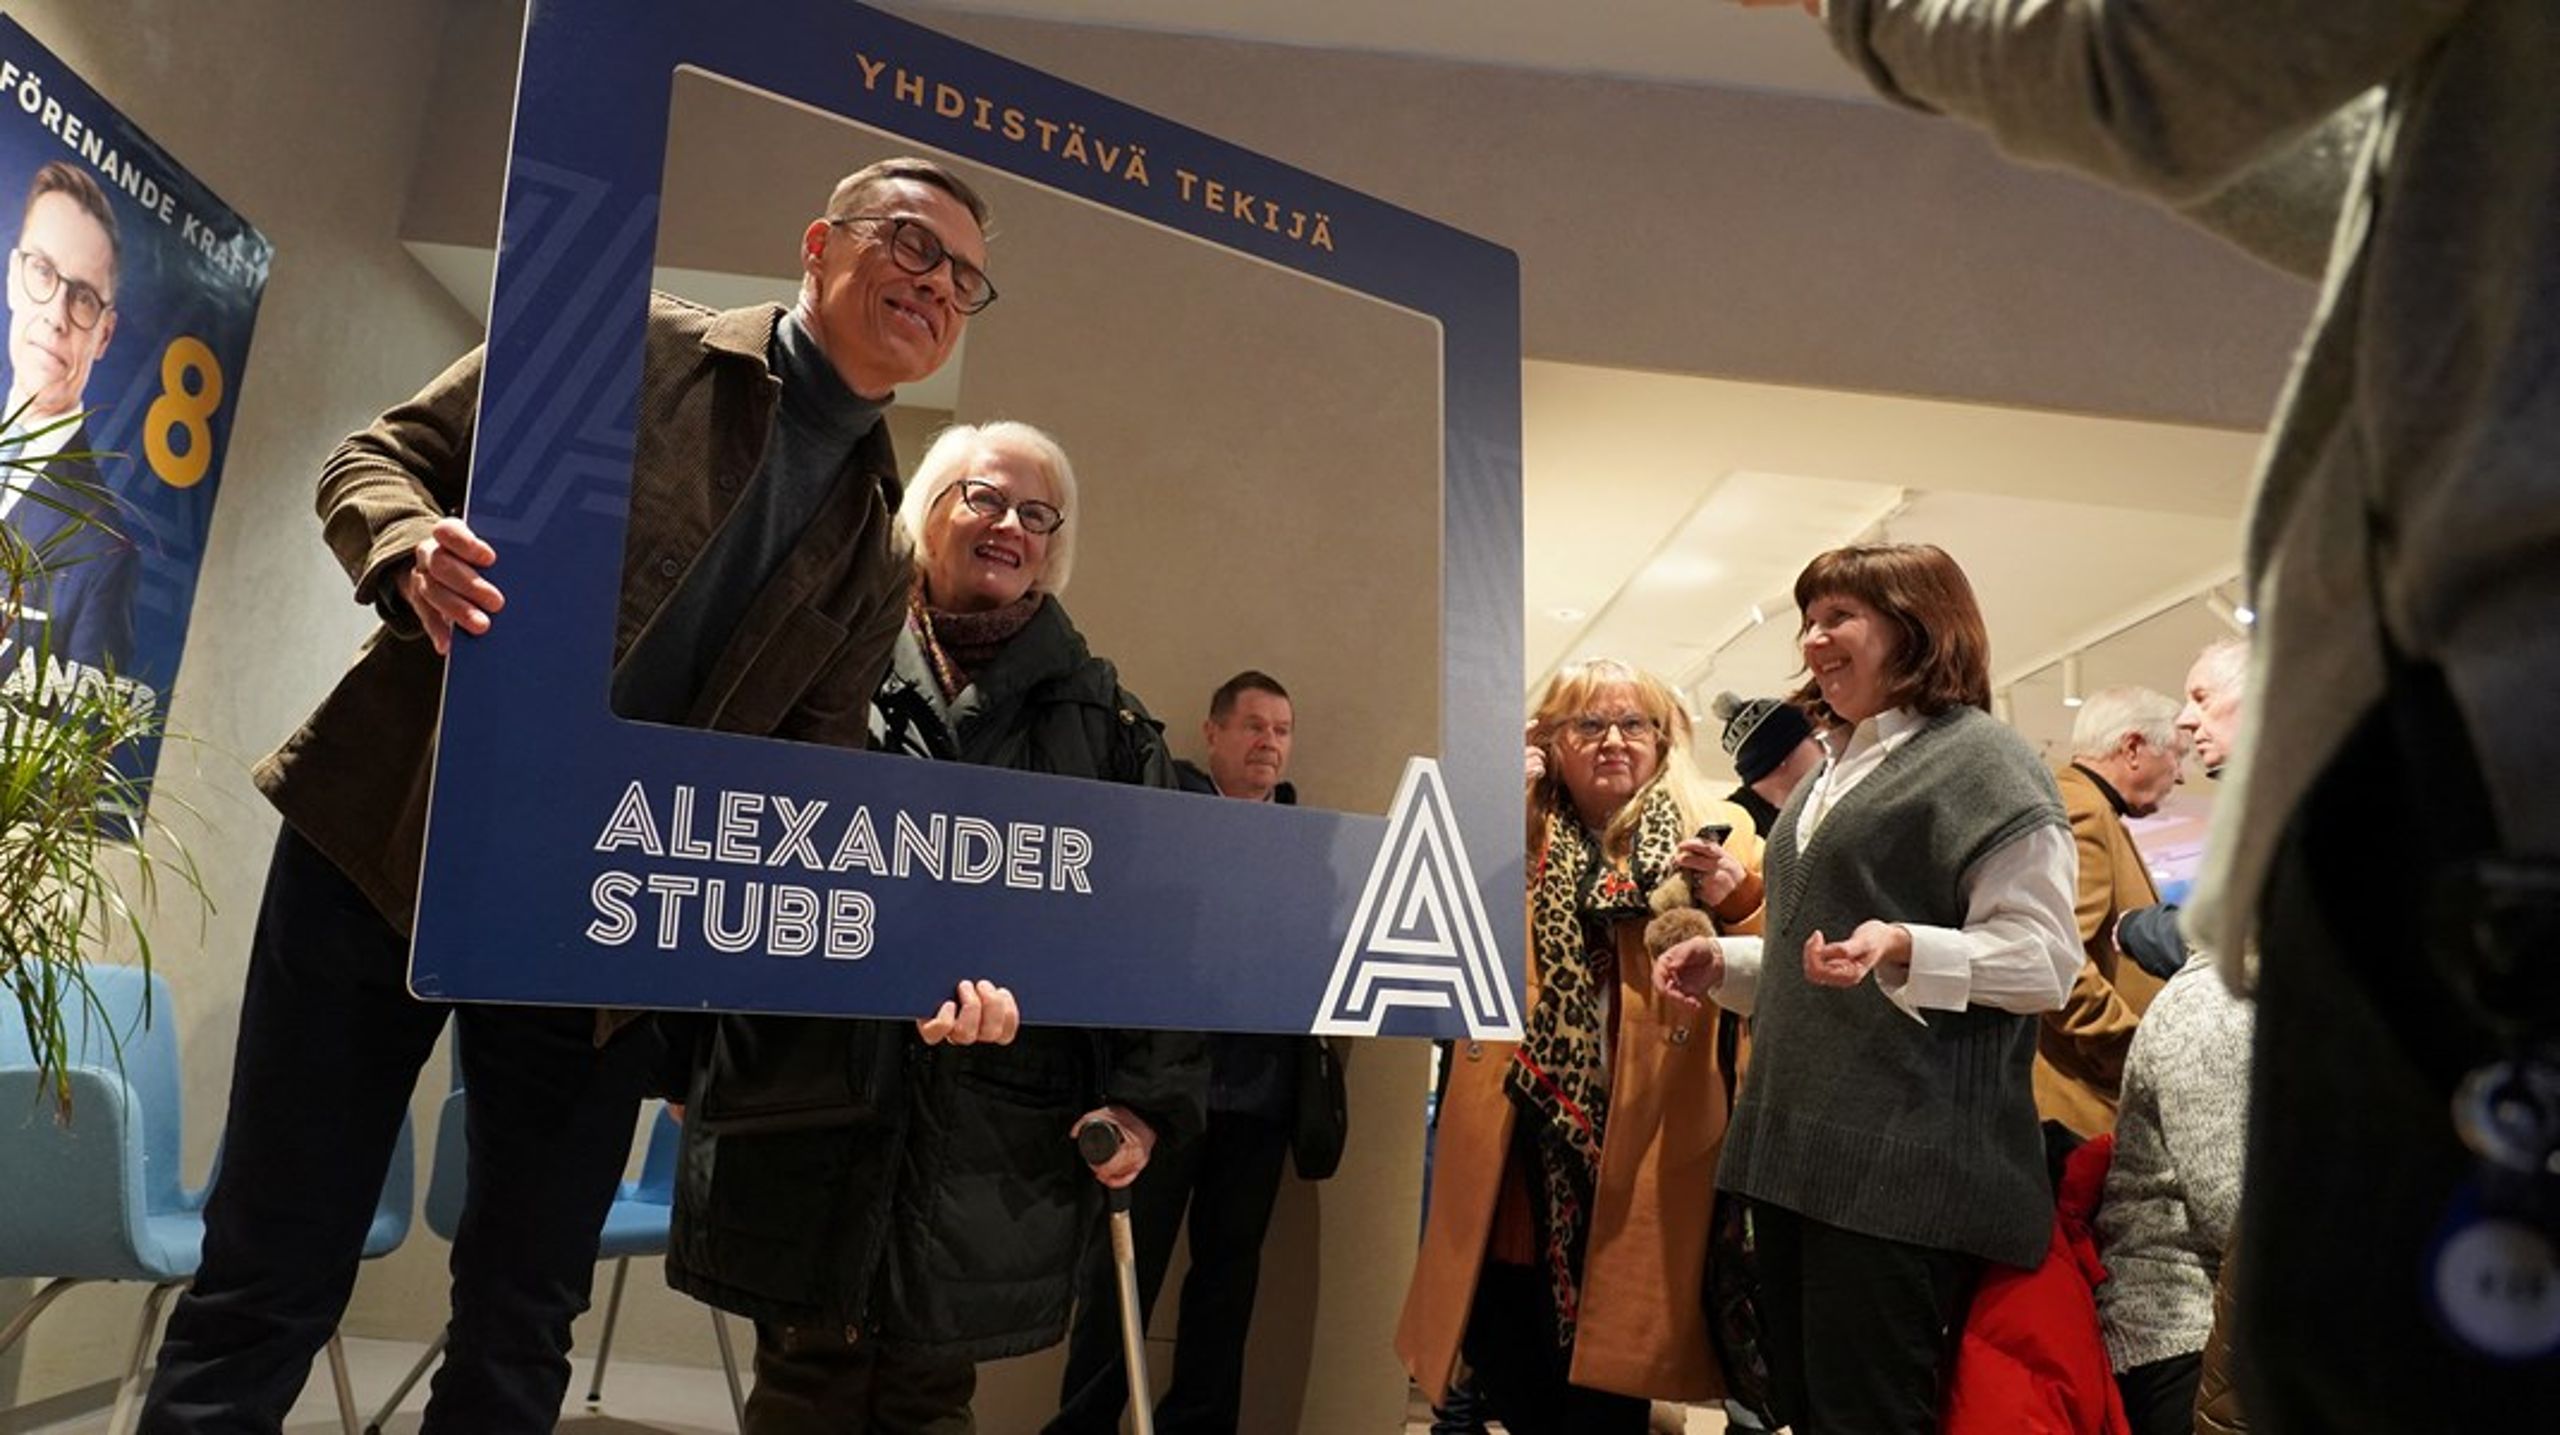 Alexander Stubb er presidentkandidat for Samlingspartiet. Han har vært en profil i finsk politikk i en årrekke, men har de siste årene gjort akademisk karriere. Her er han på valgkampturné i Helsinki.&nbsp;<br>